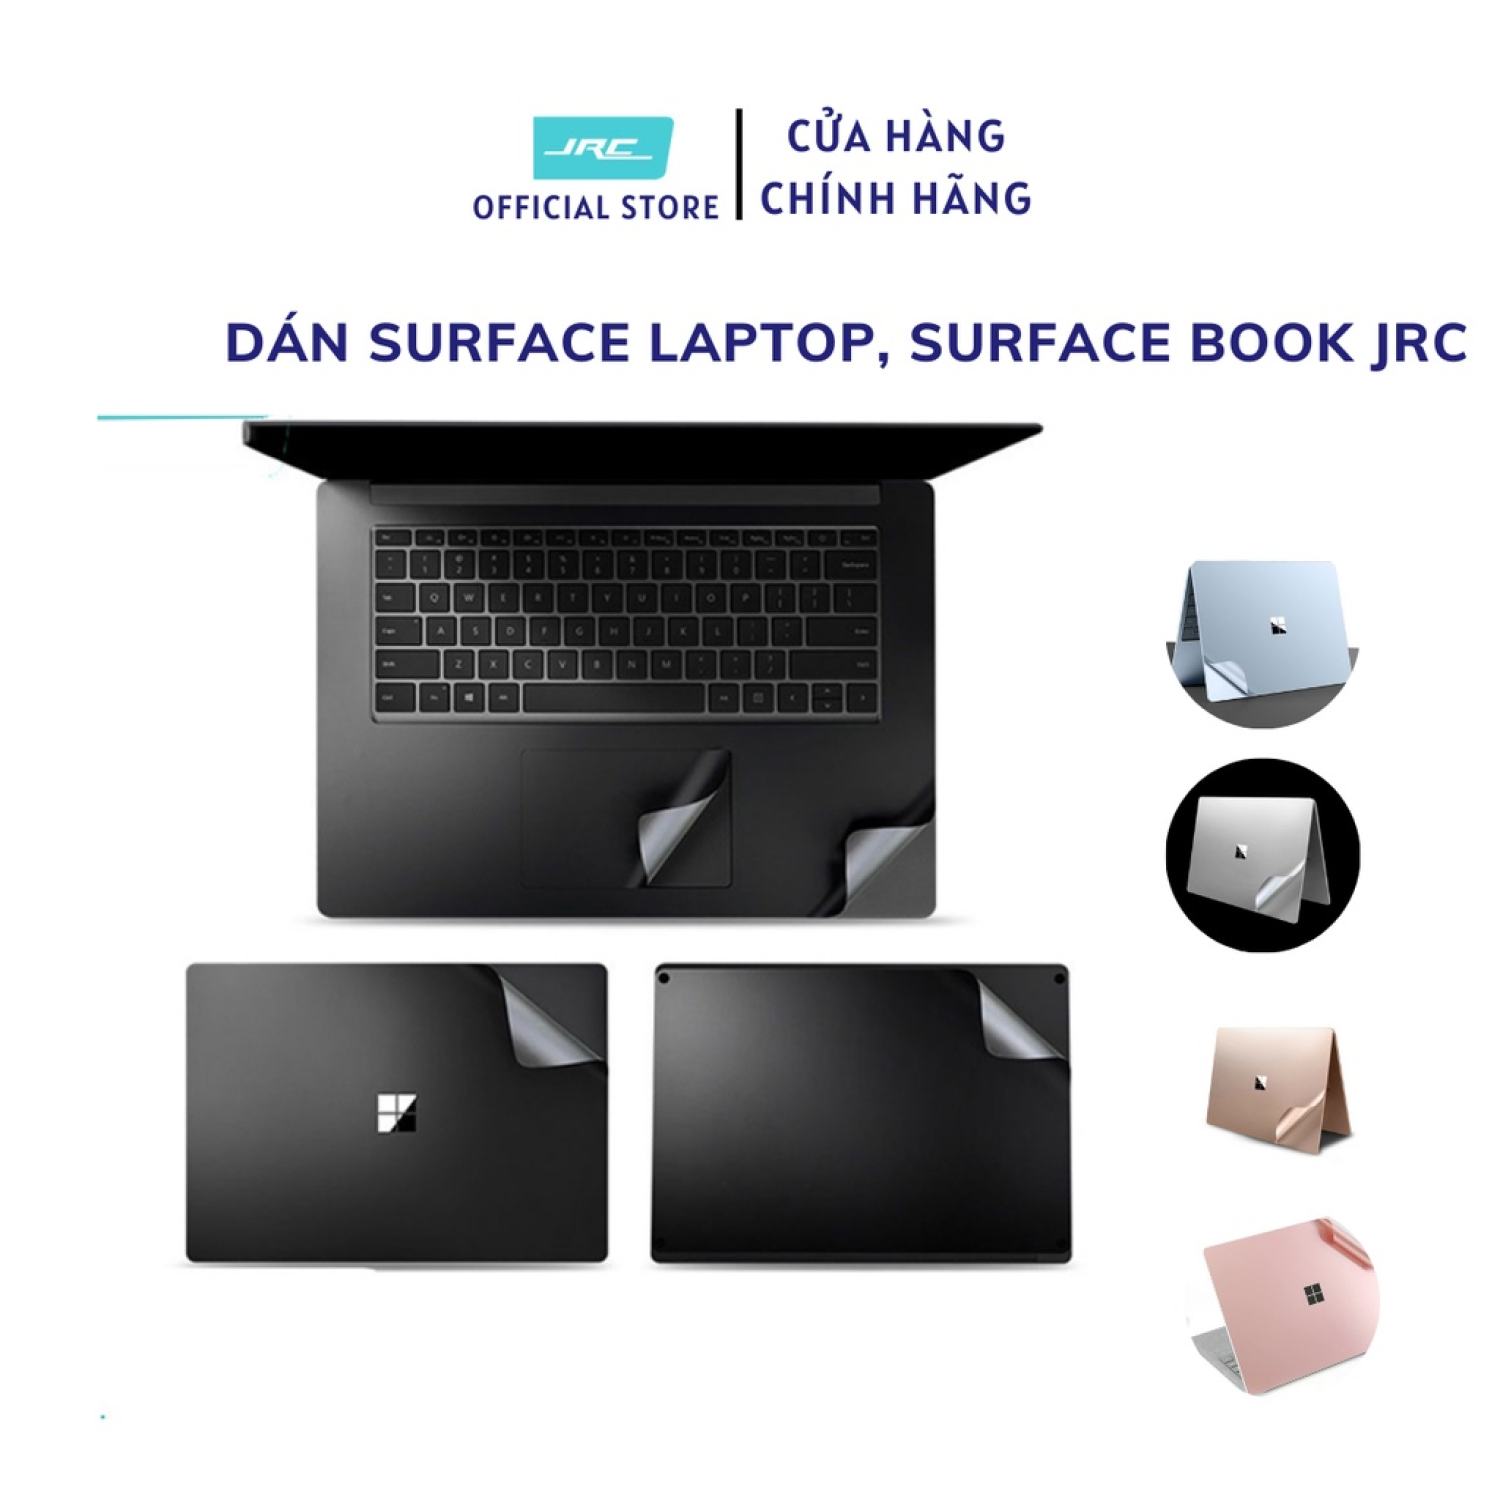 Bộ dán surface laptop, surface book JRC 4in1 chất liệu nhôm 3M chống xước tốt